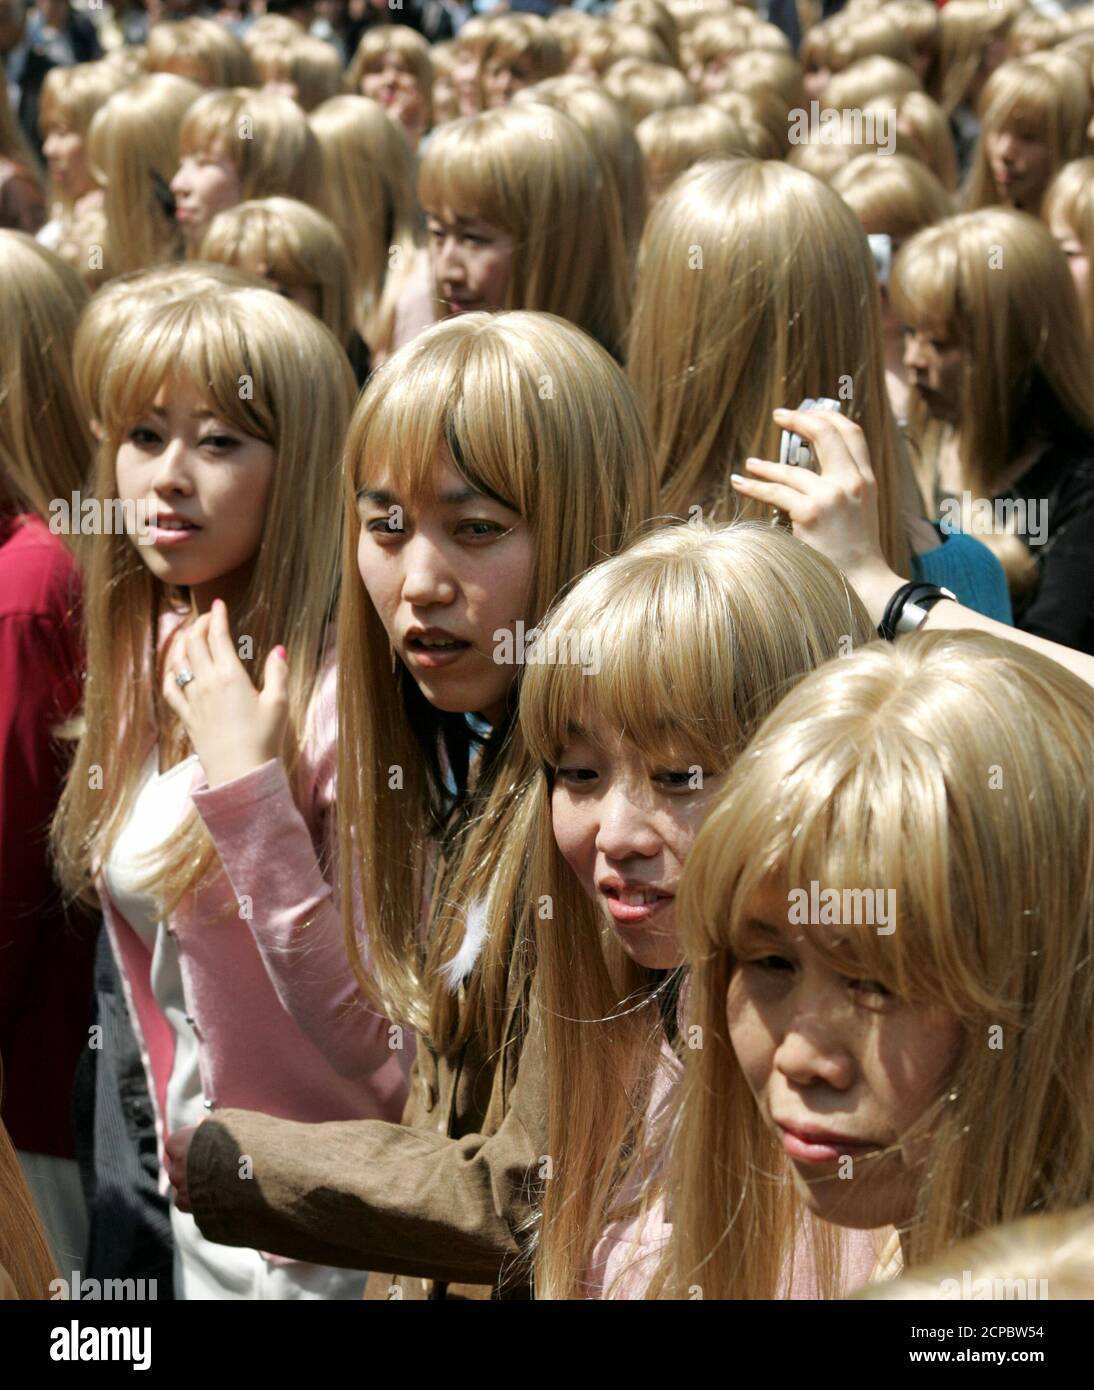 Women wearing wigs